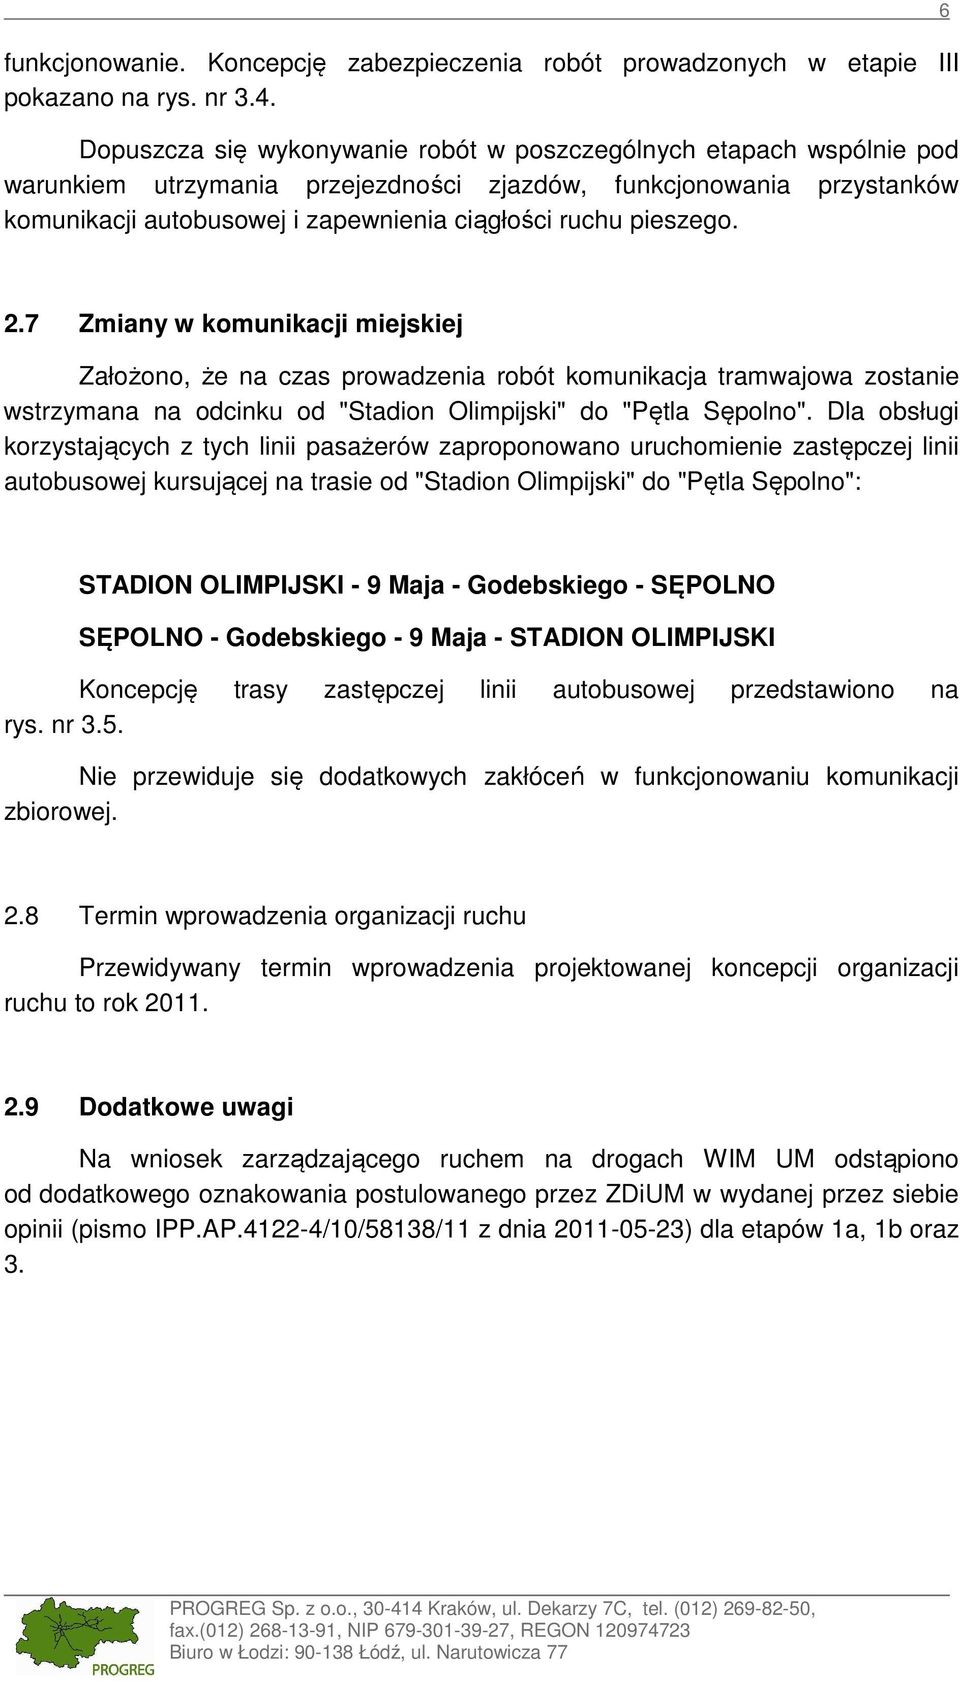 pieszego. 6 2.7 Zmiany w komunikacji miejskiej Założono, że na czas prowadzenia robót komunikacja tramwajowa zostanie wstrzymana na odcinku od "Stadion Olimpijski" do "Pętla Sępolno".